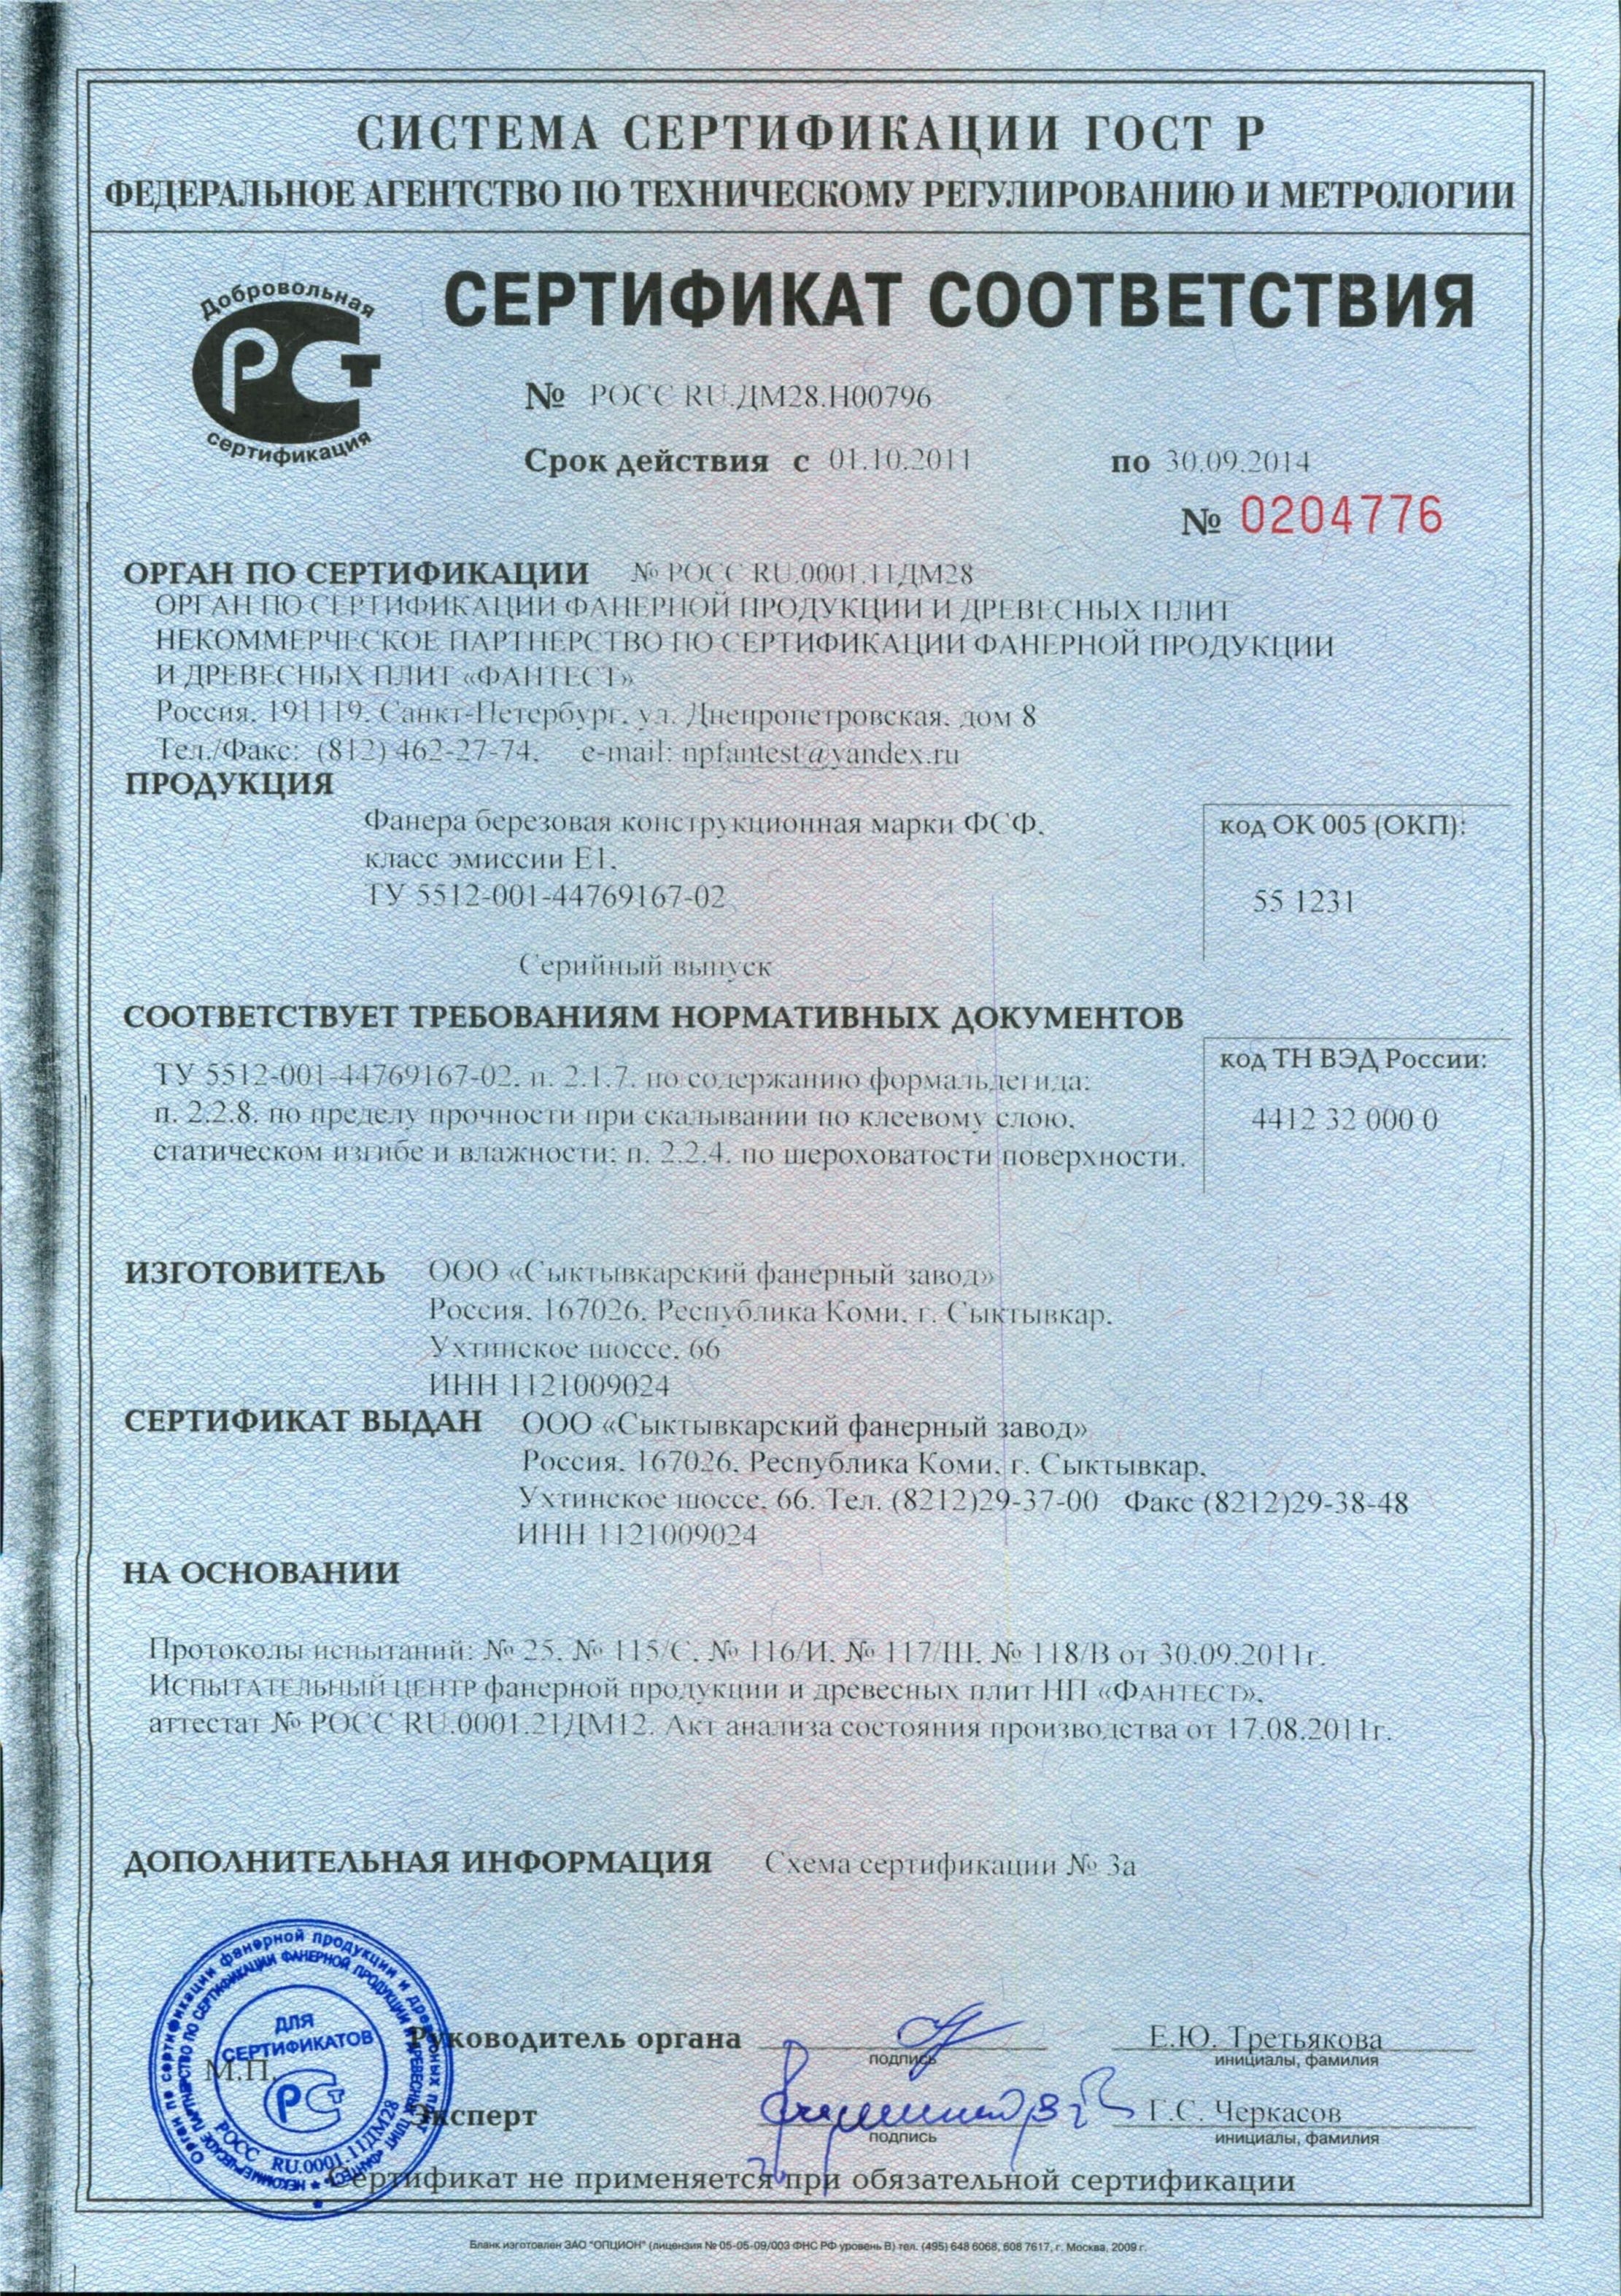 Сертификат соответствия Фанера ФСФ